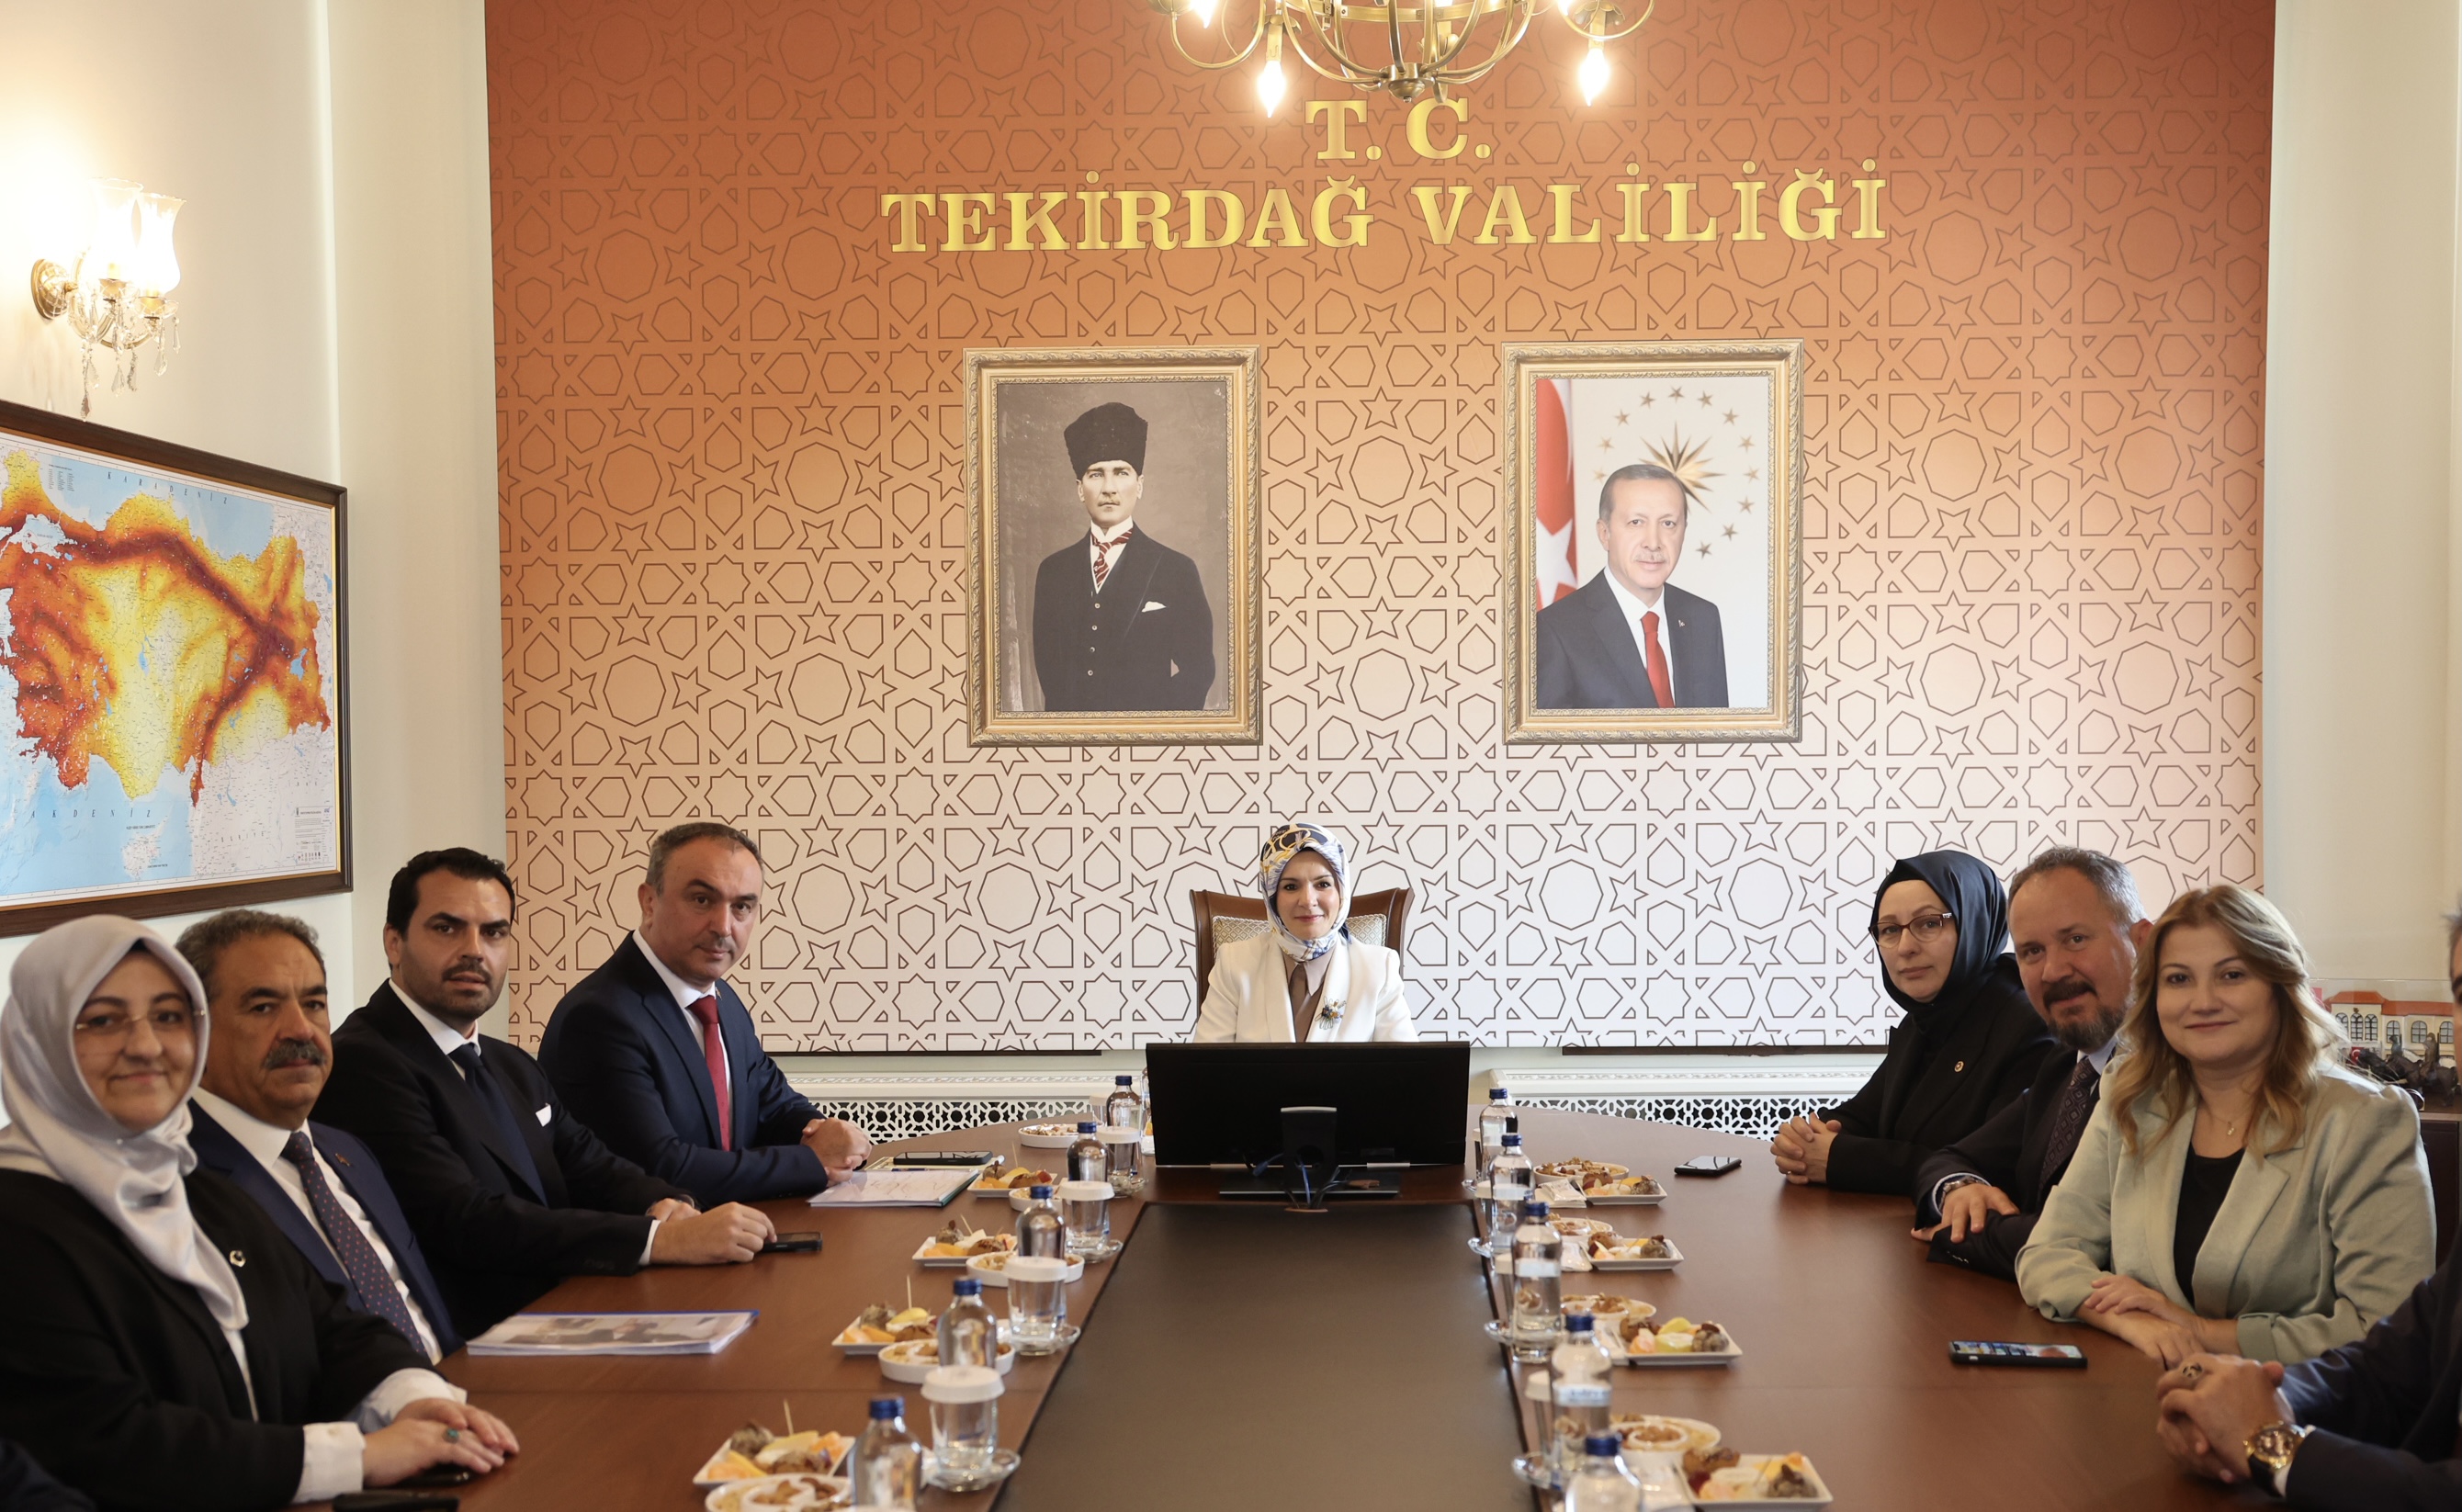 Bakanımız Mahinur Özdemir Göktaş, Tekirdağ'da Ziyaretlerde Bulundu